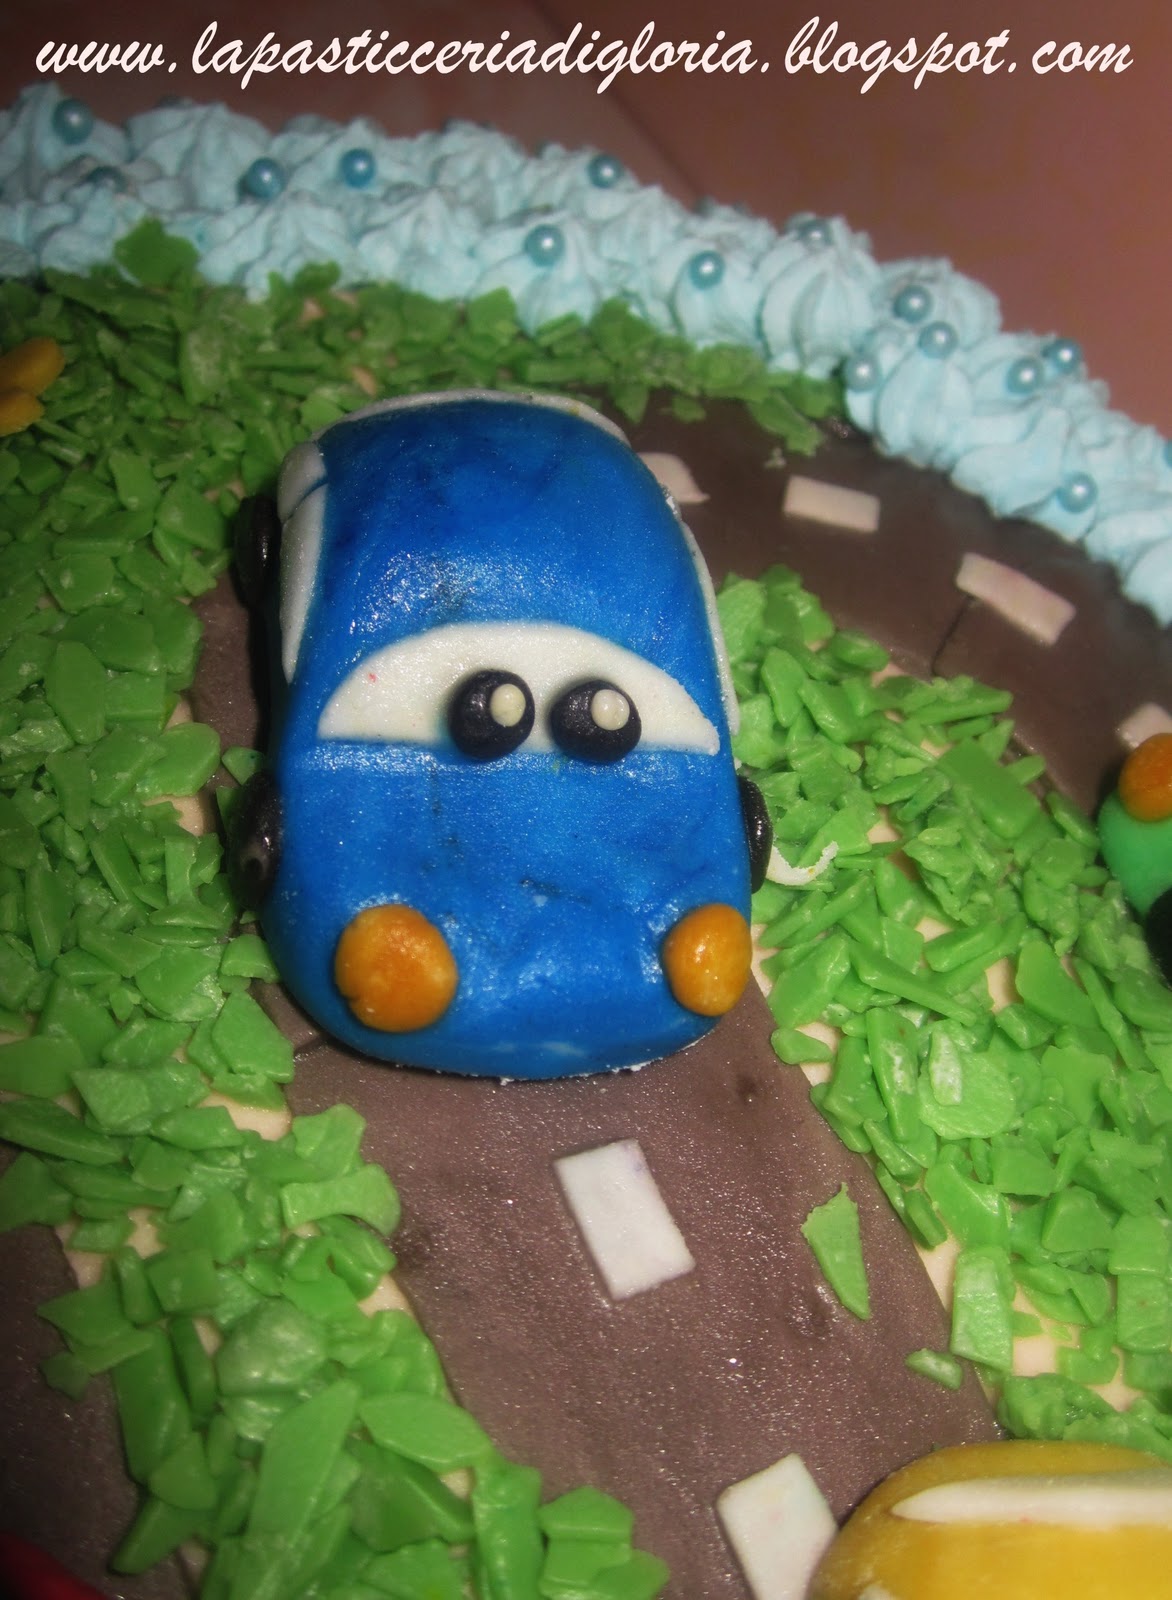 Torta decorata ispirata a Cars da La pasticceria di Gloria su